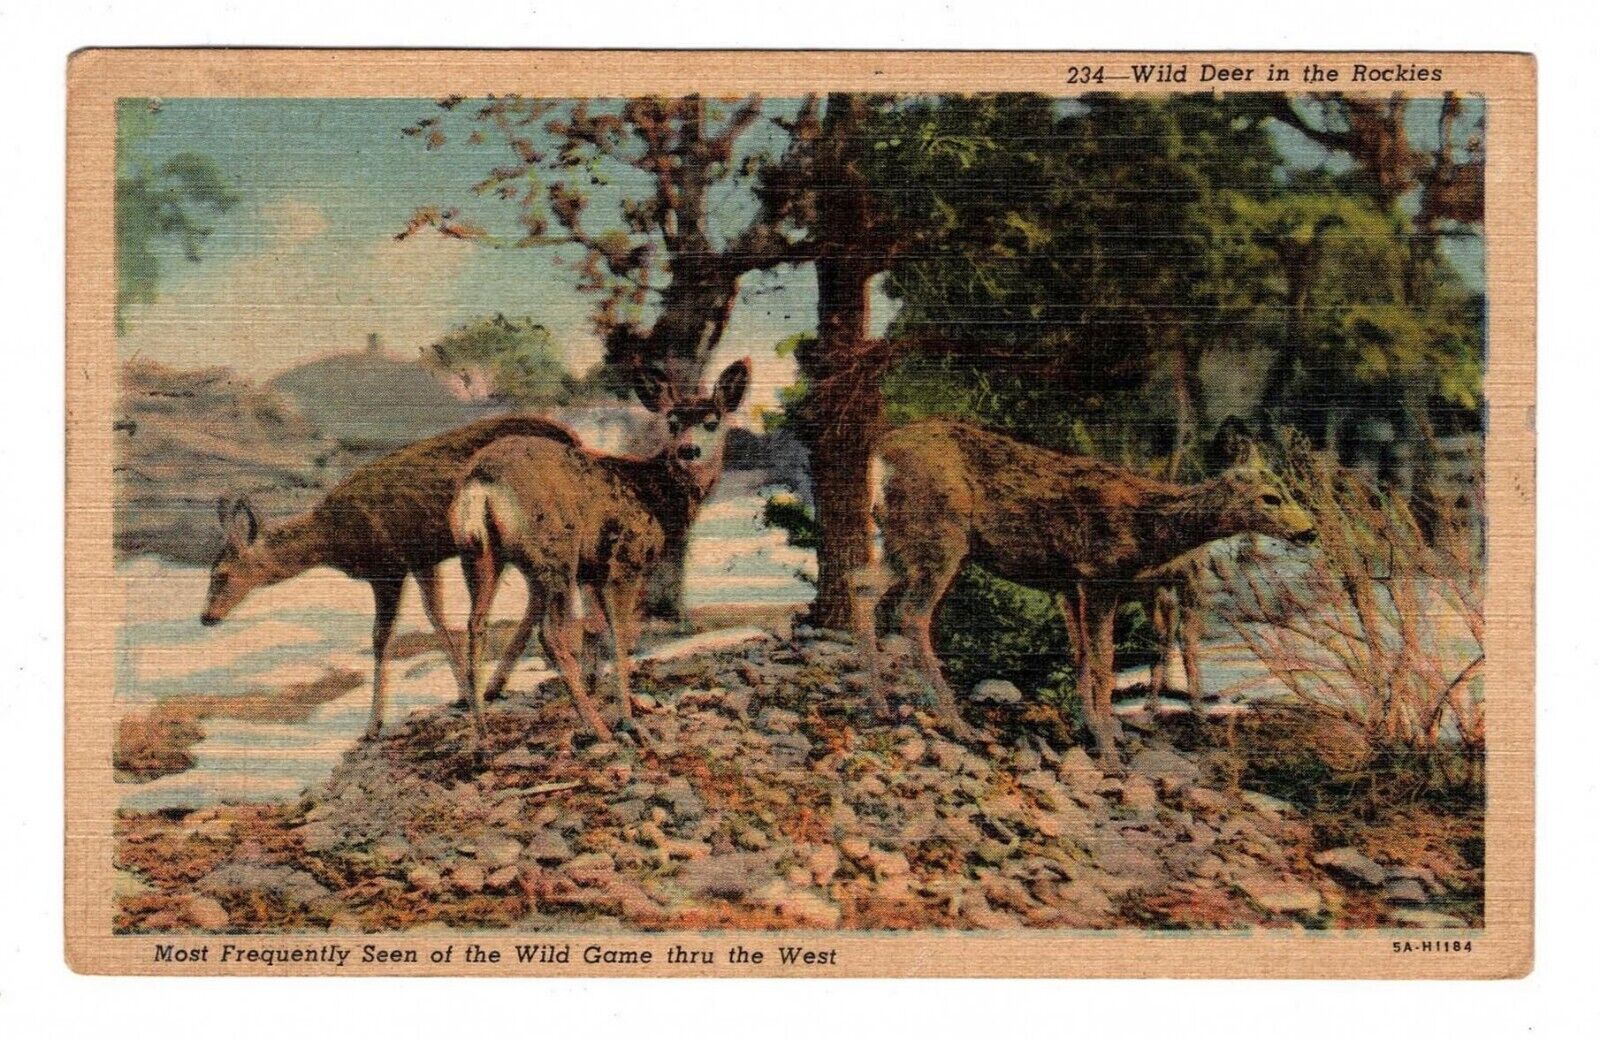  Wild Deer in The Rockies - Vintage Postcard used by Leonard Borman